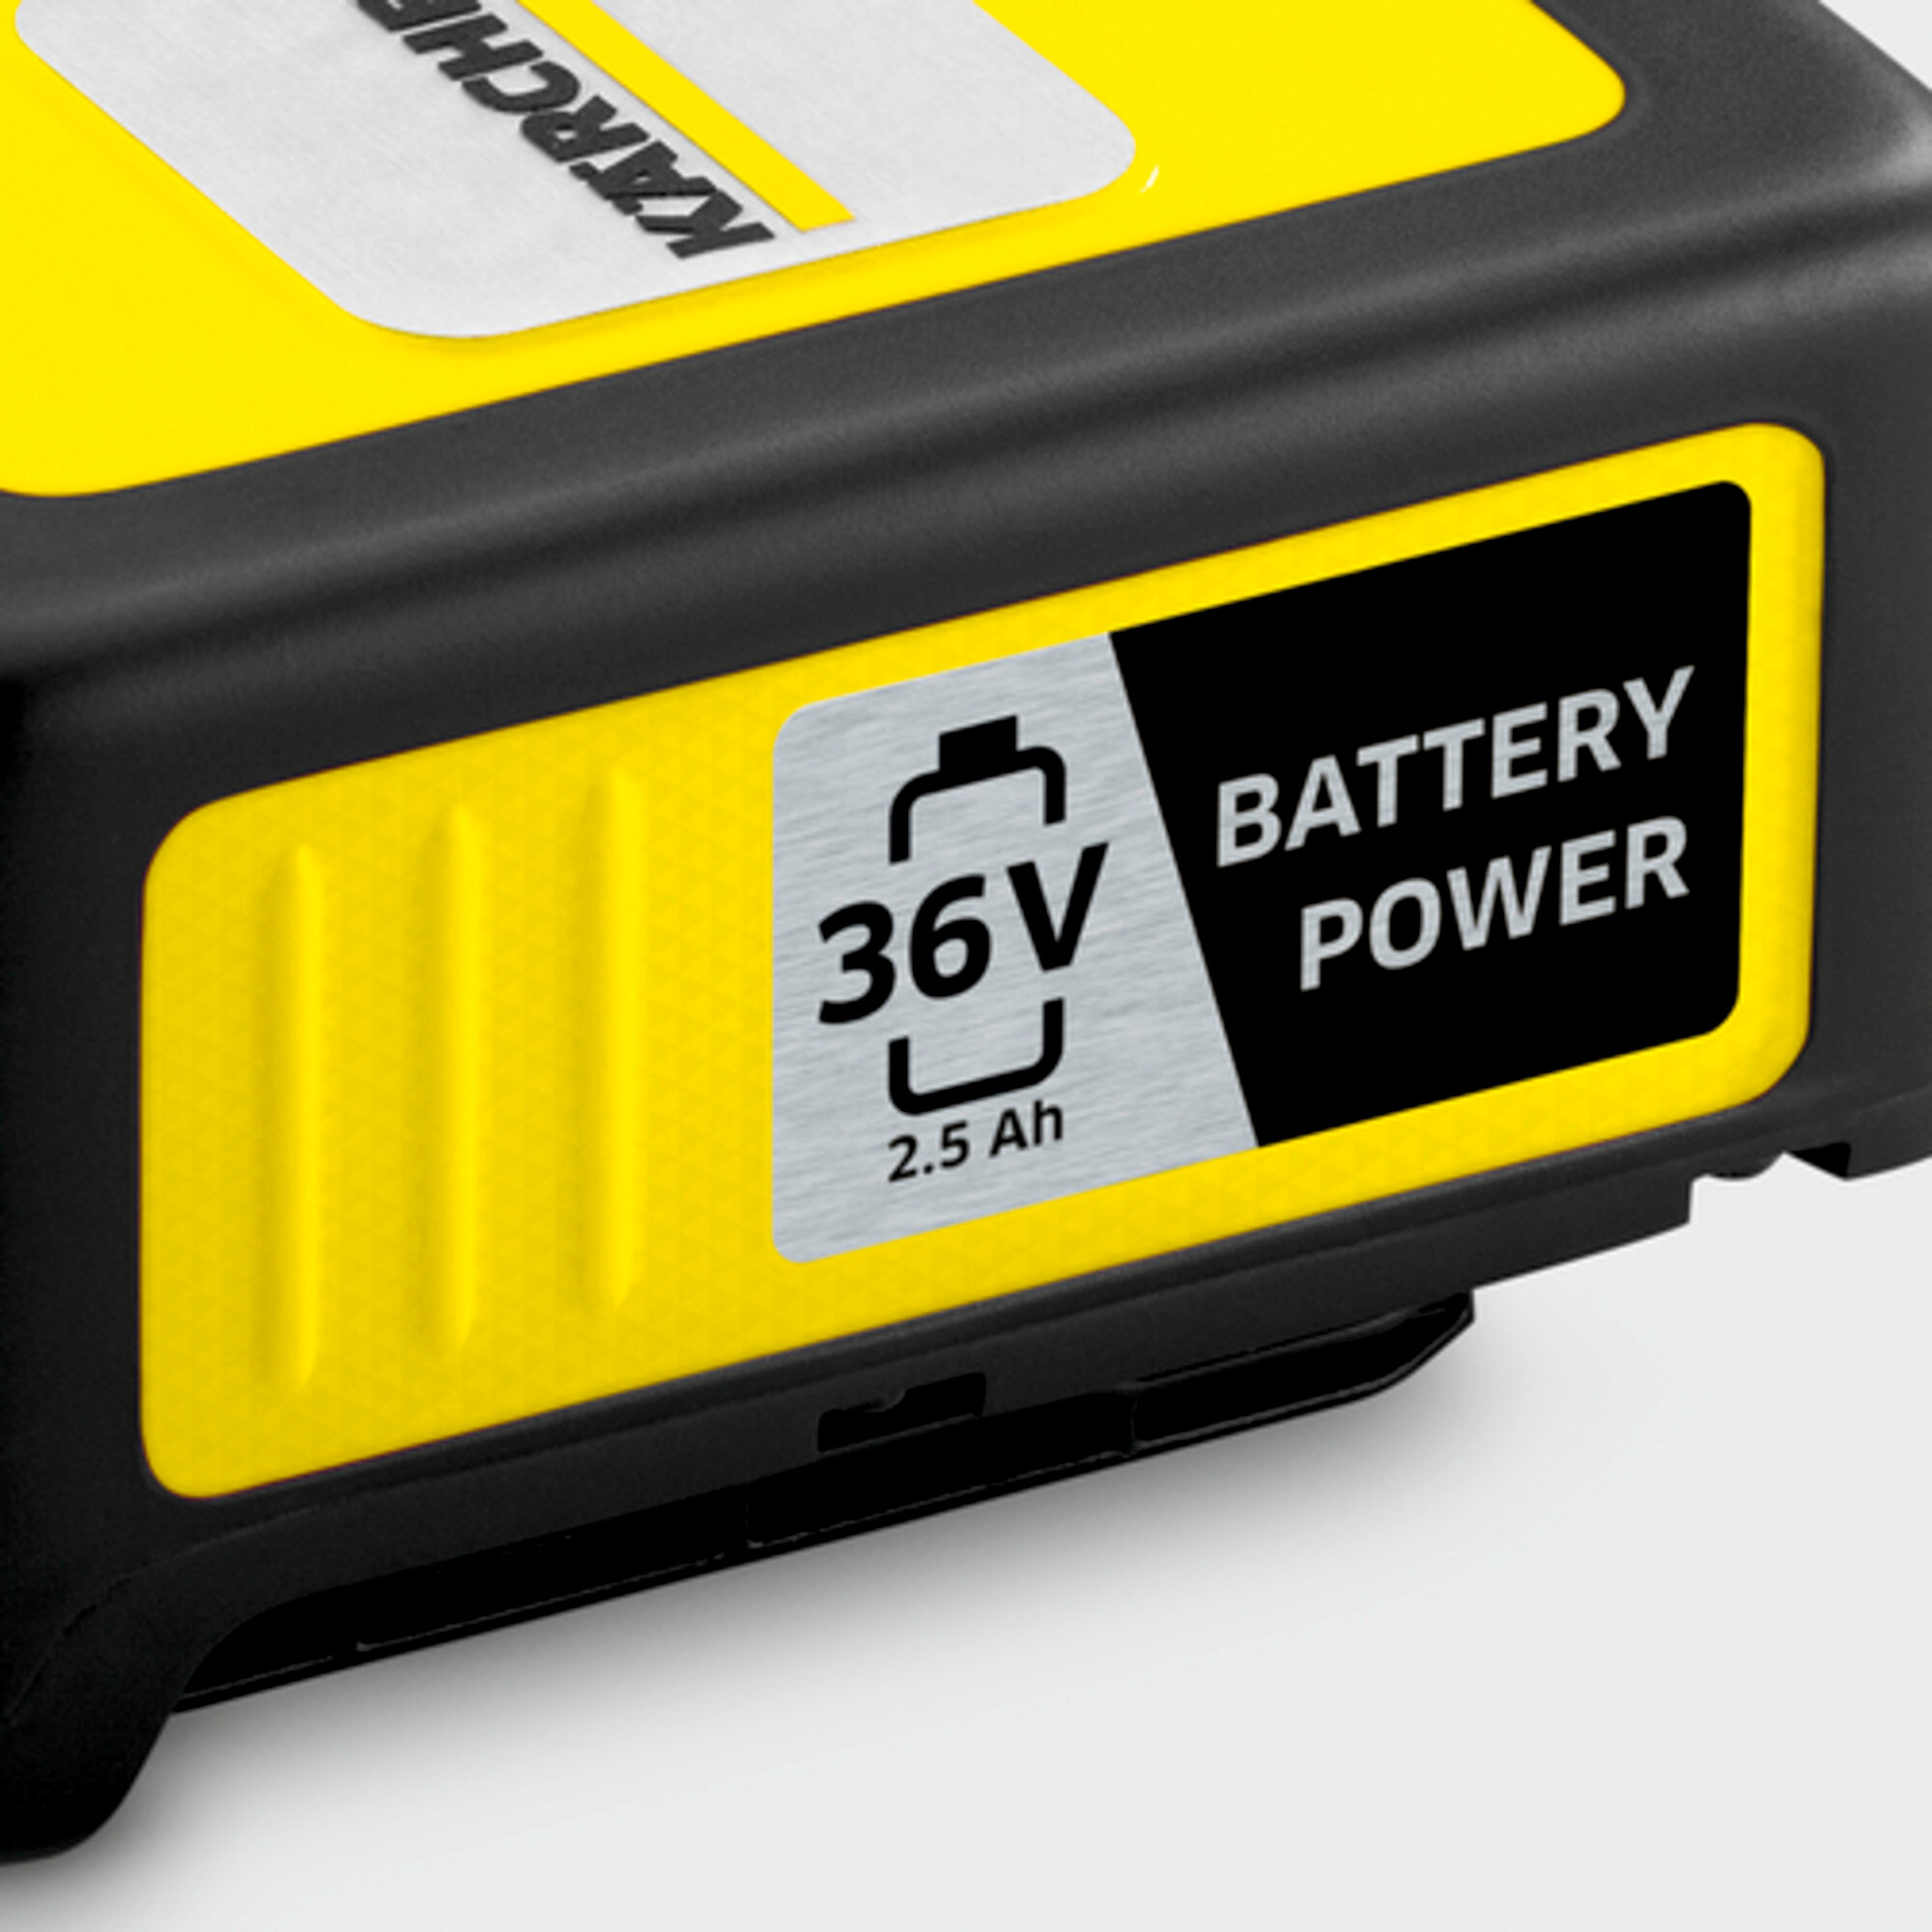  aloituspakkaus Battery Power 36/25: vaihdettava Kärcheri 36 V Battery Power akku